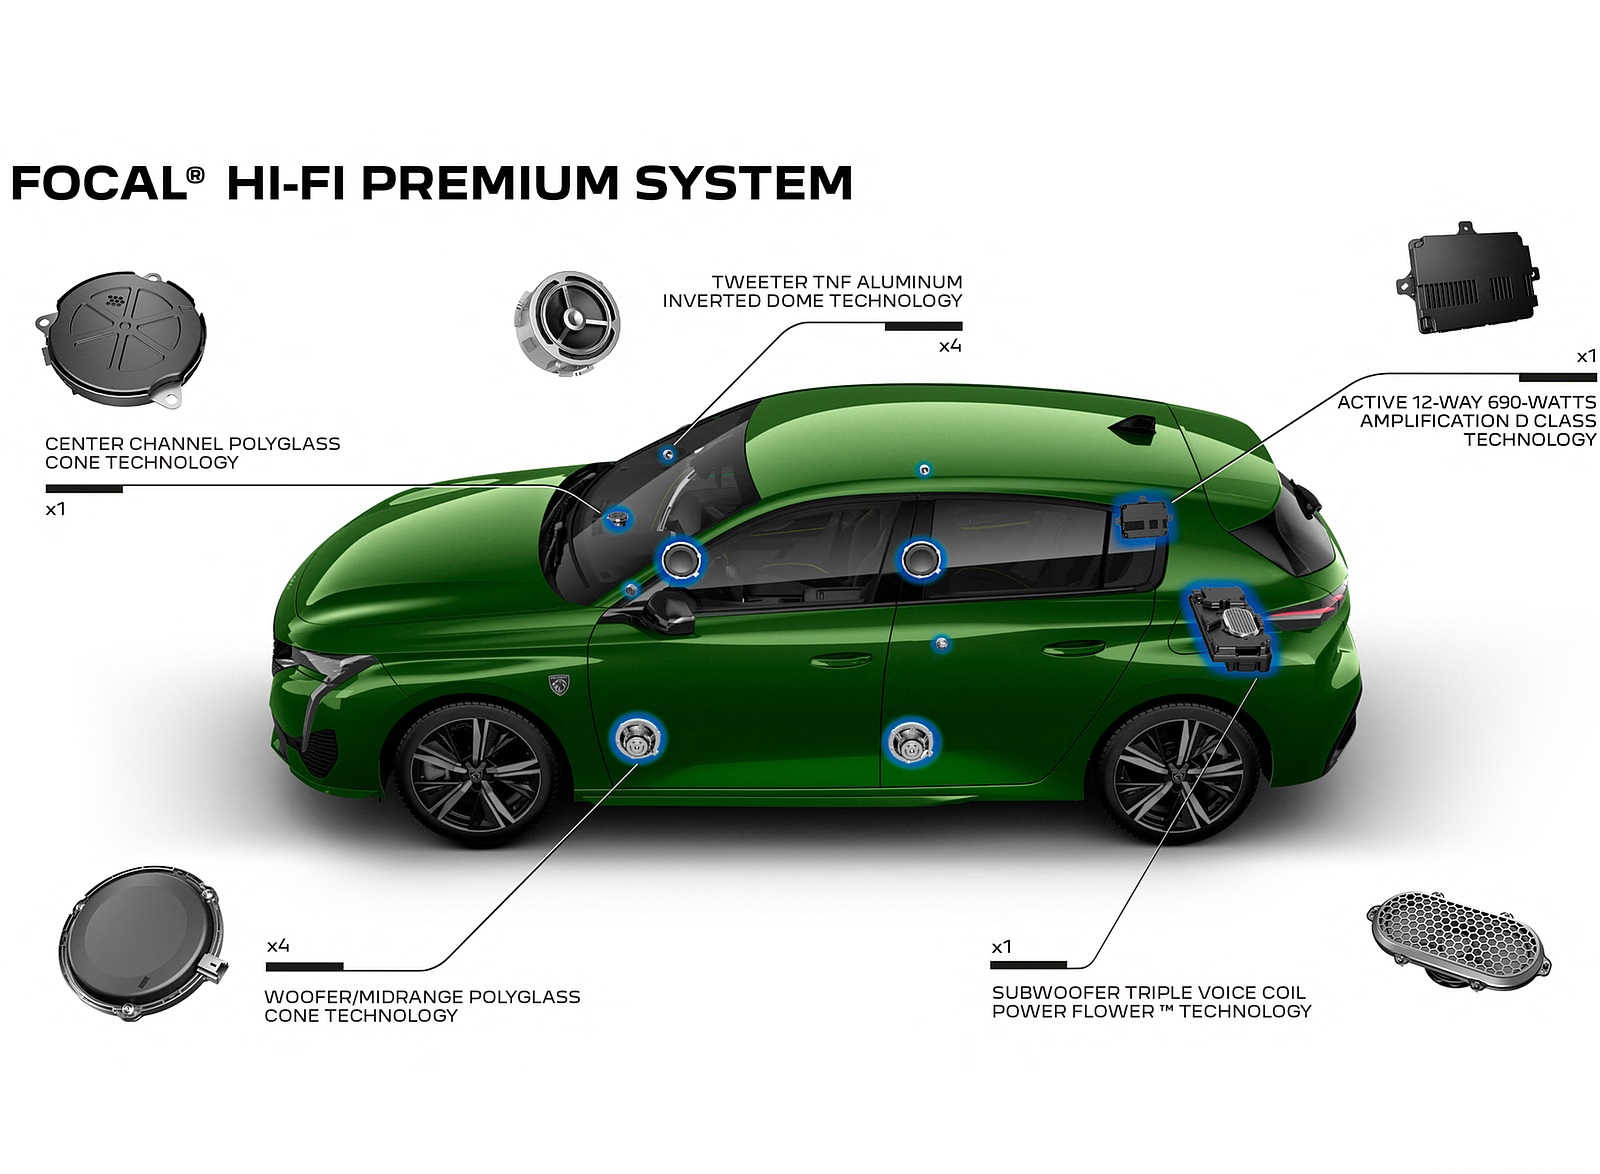 2022 Peugeot 308 PHEV Focal Hi-Fi Premium System Wallpapers #72 of 75